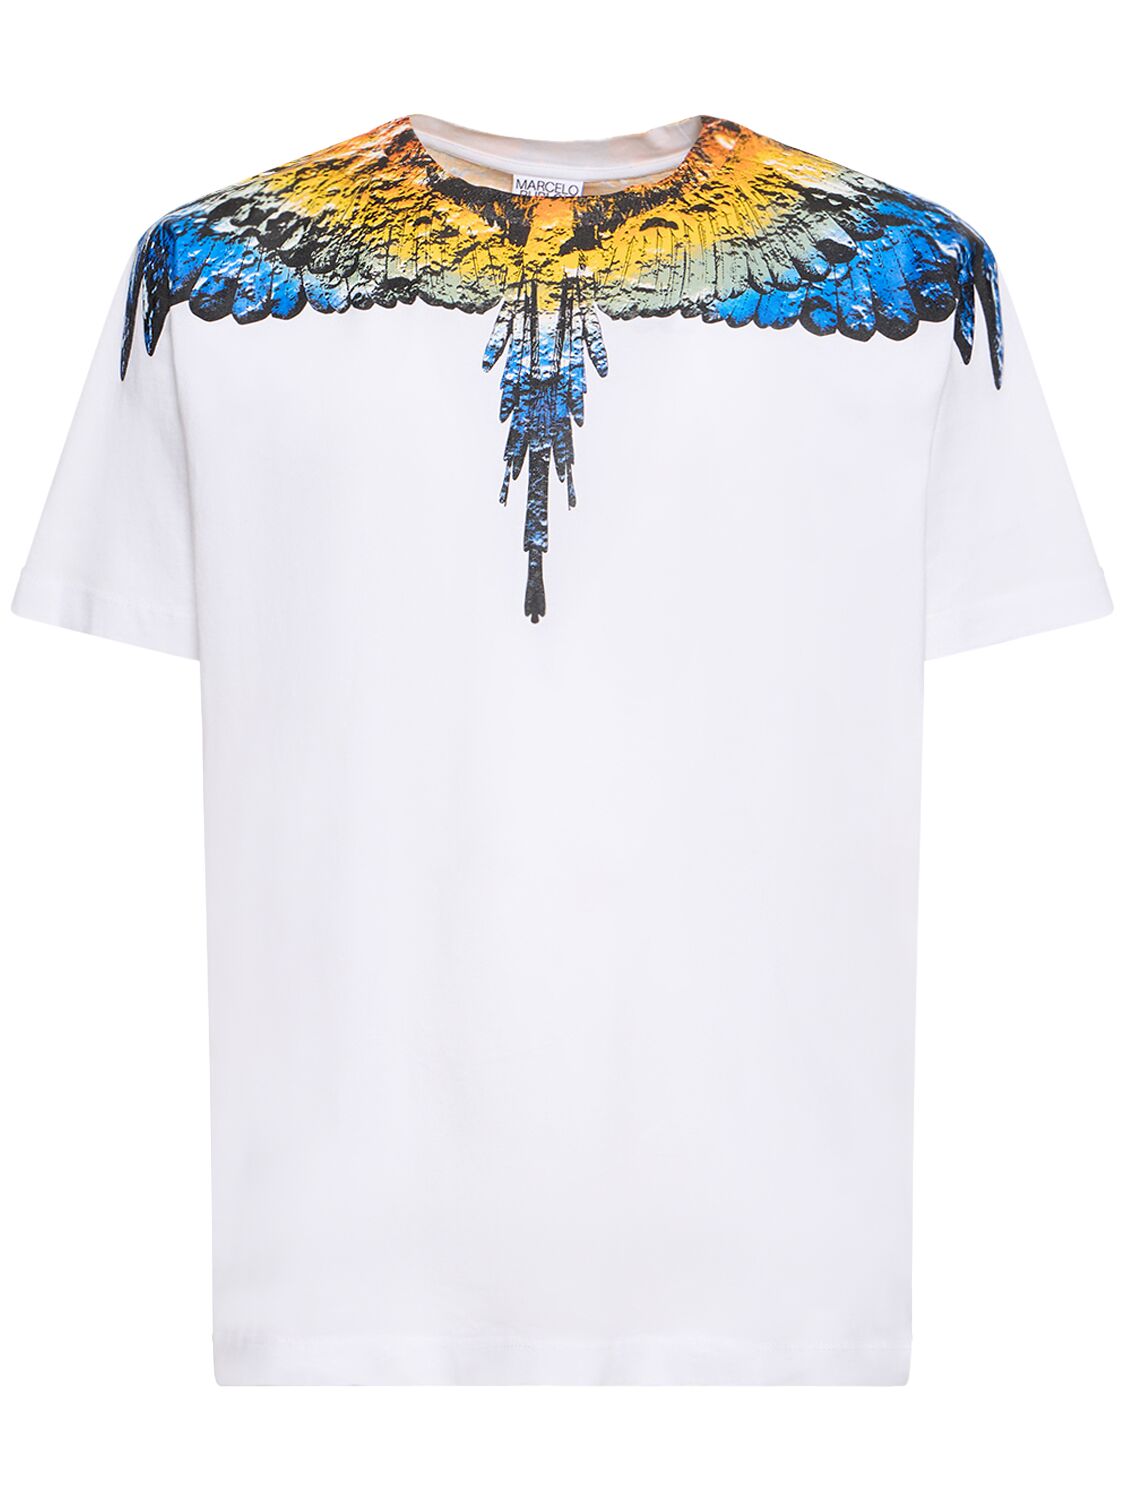 Lunar Wings Cotton Jersey T-shirt